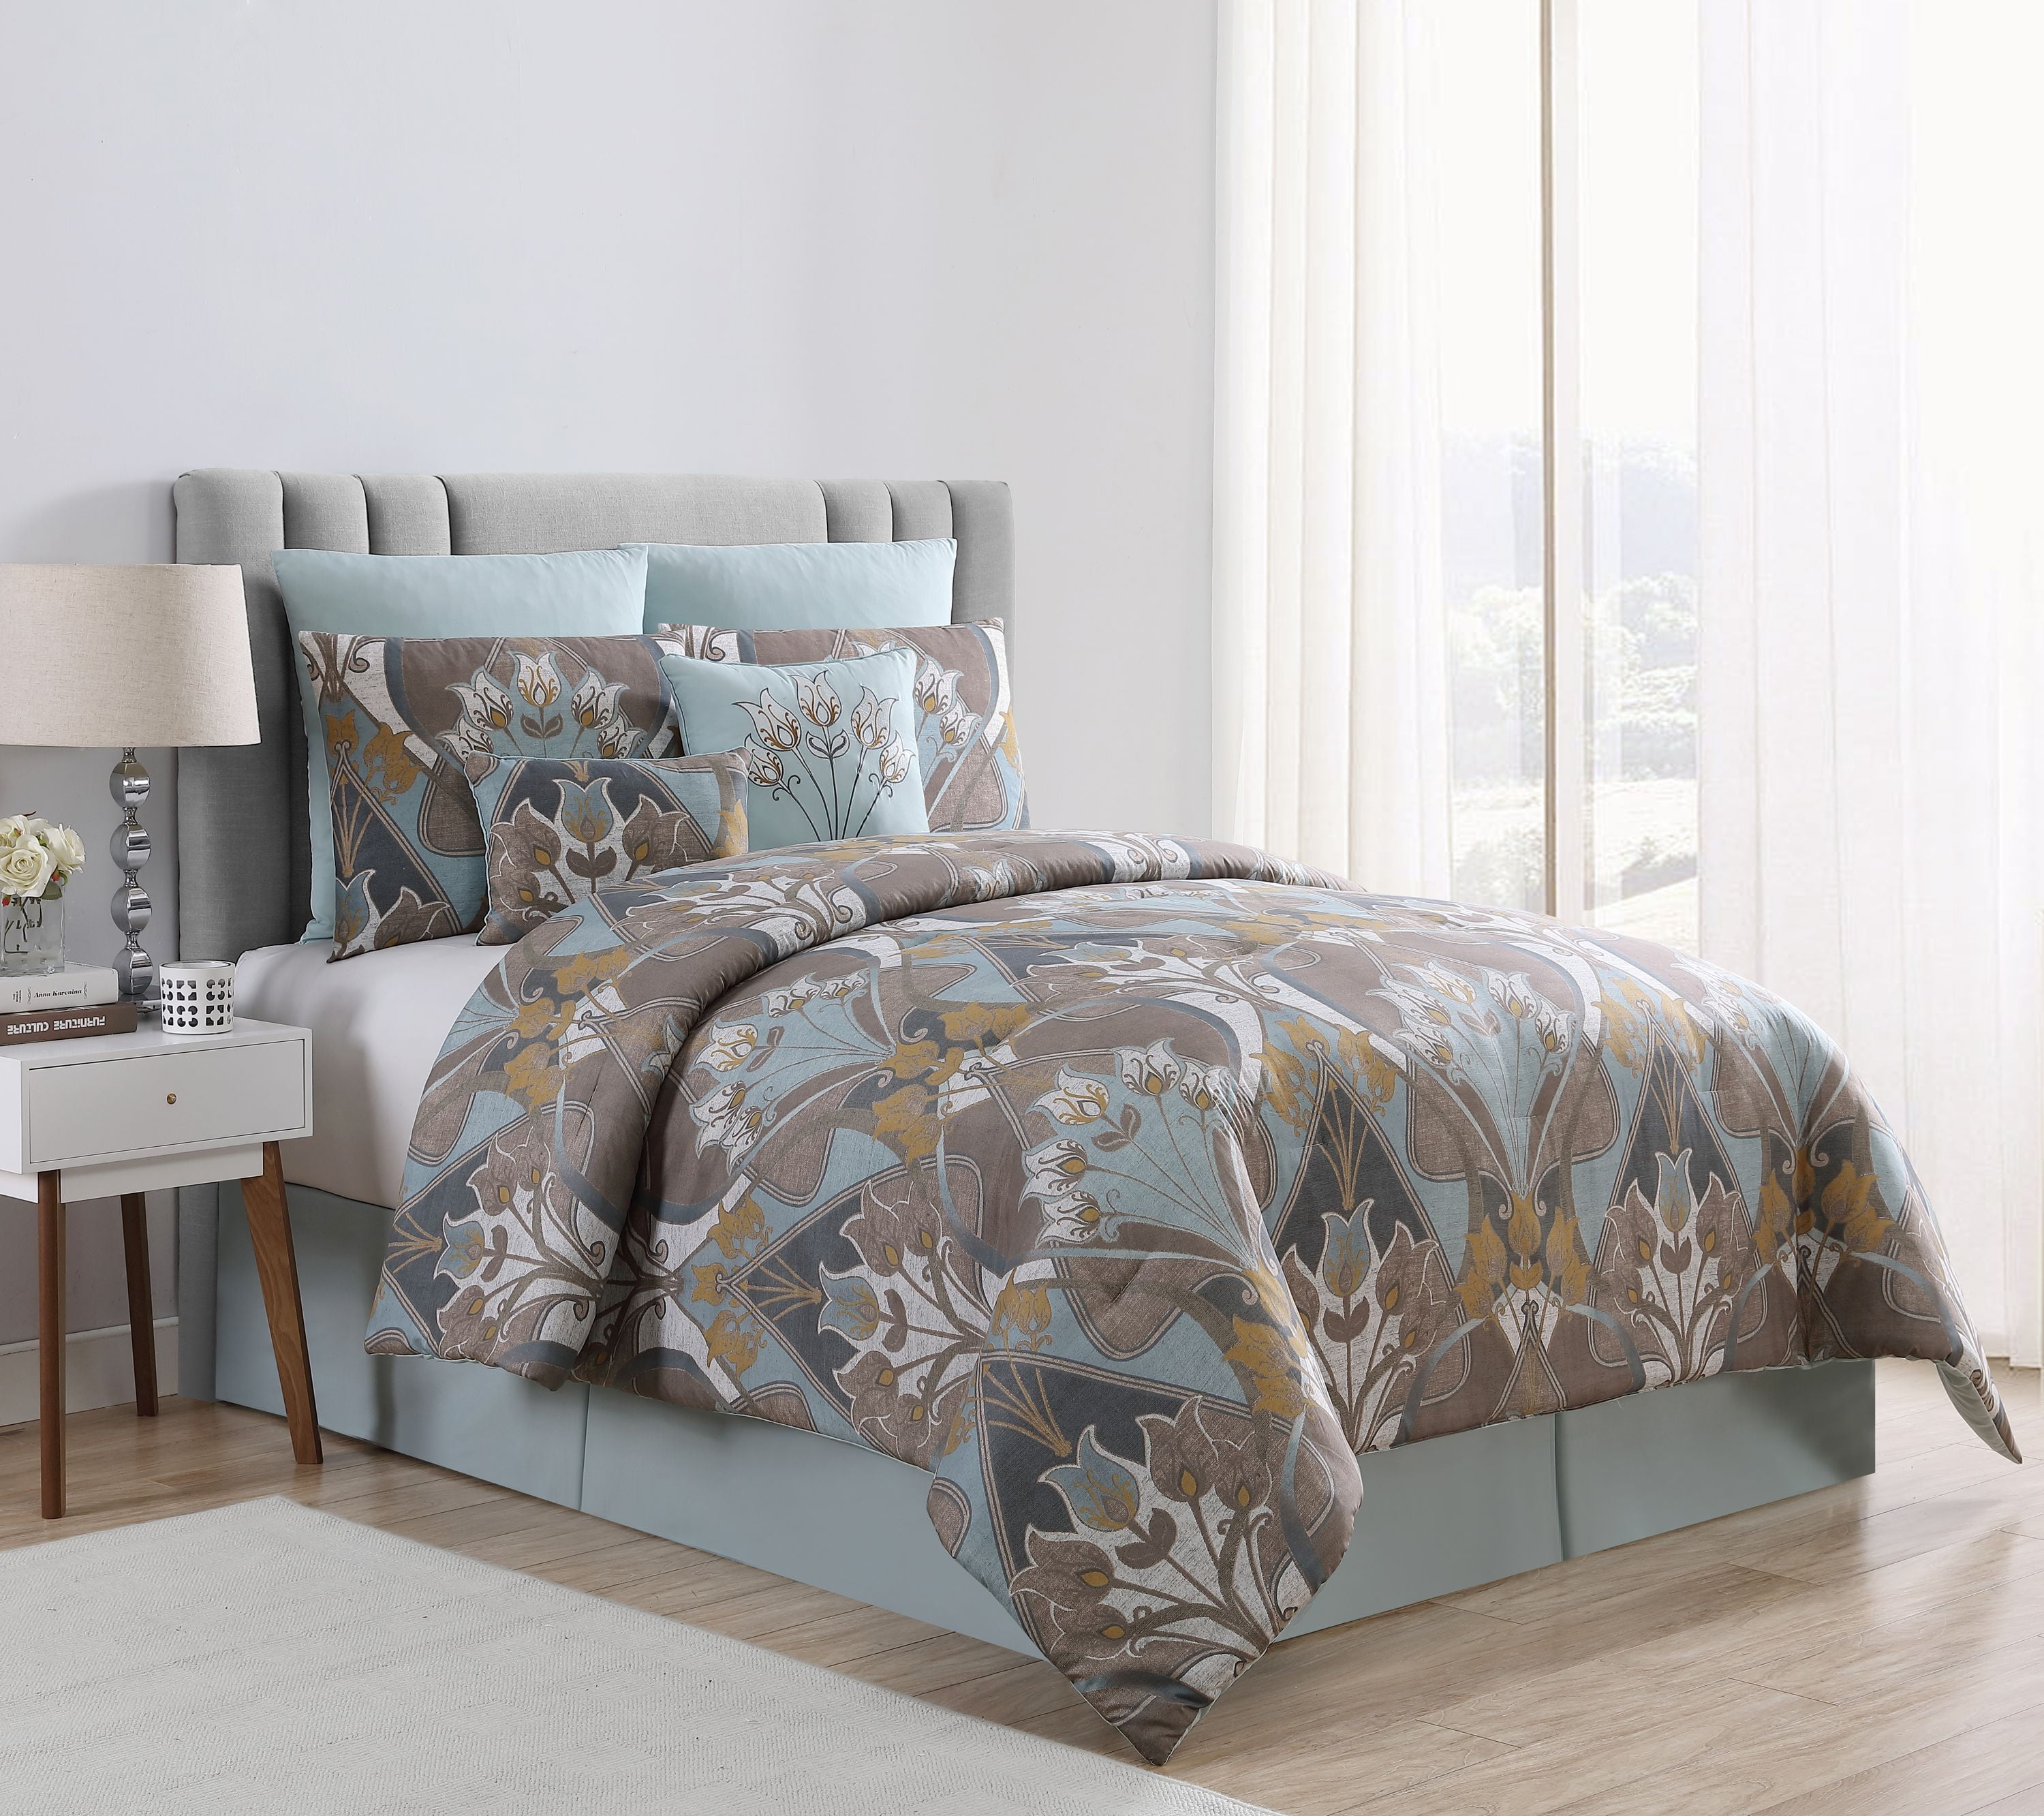 VCNY Home Novalee Floral Damask Comforter Set, Queen, Blue ...